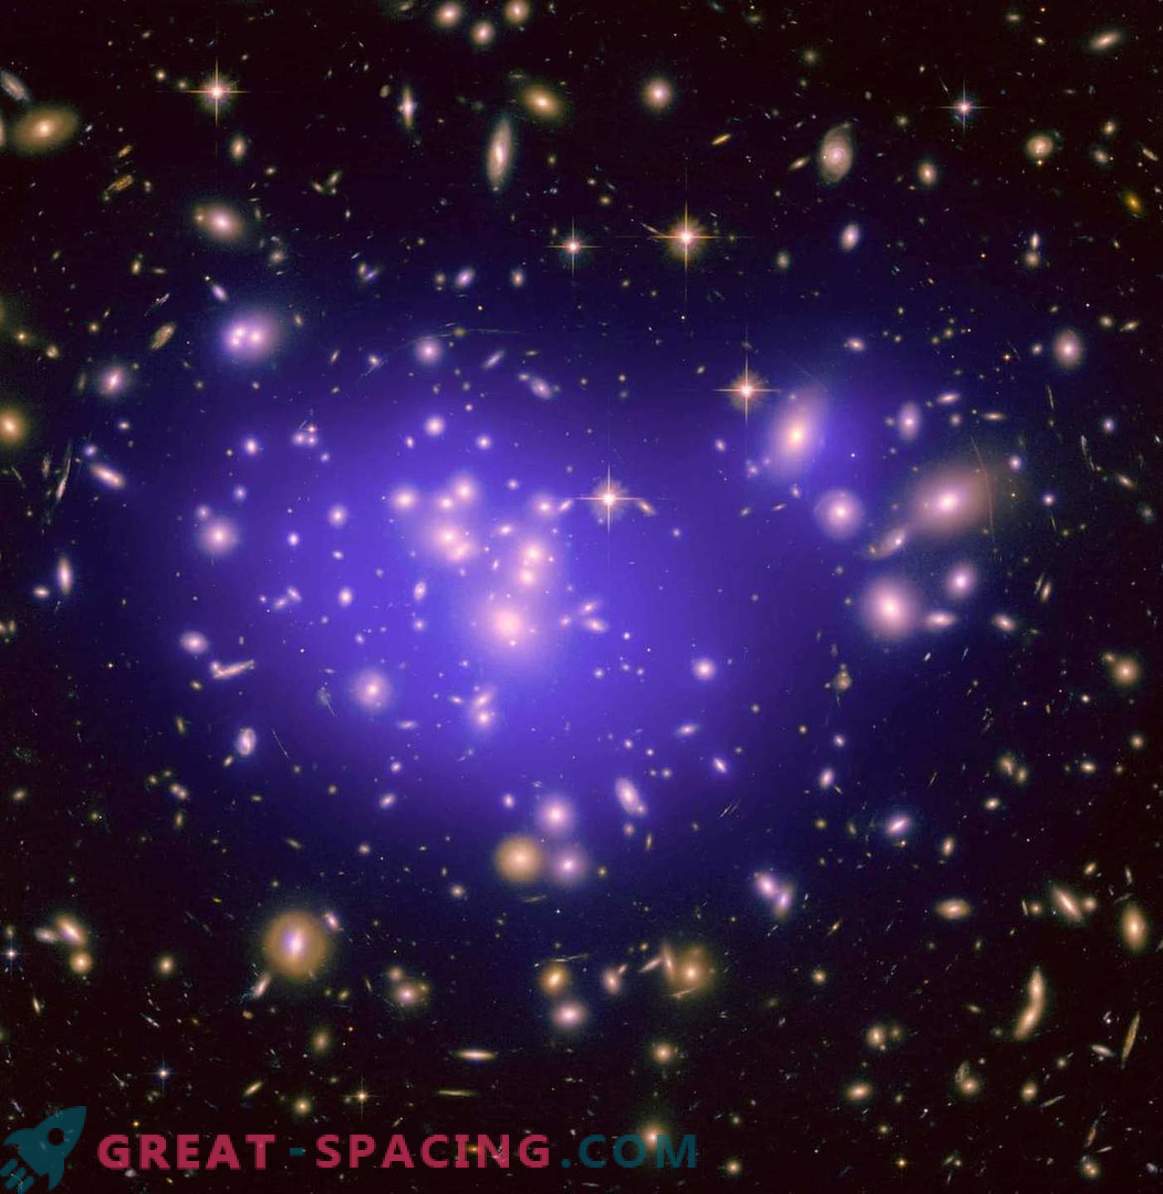 Какво стана по-рано: галактики или черни дупки